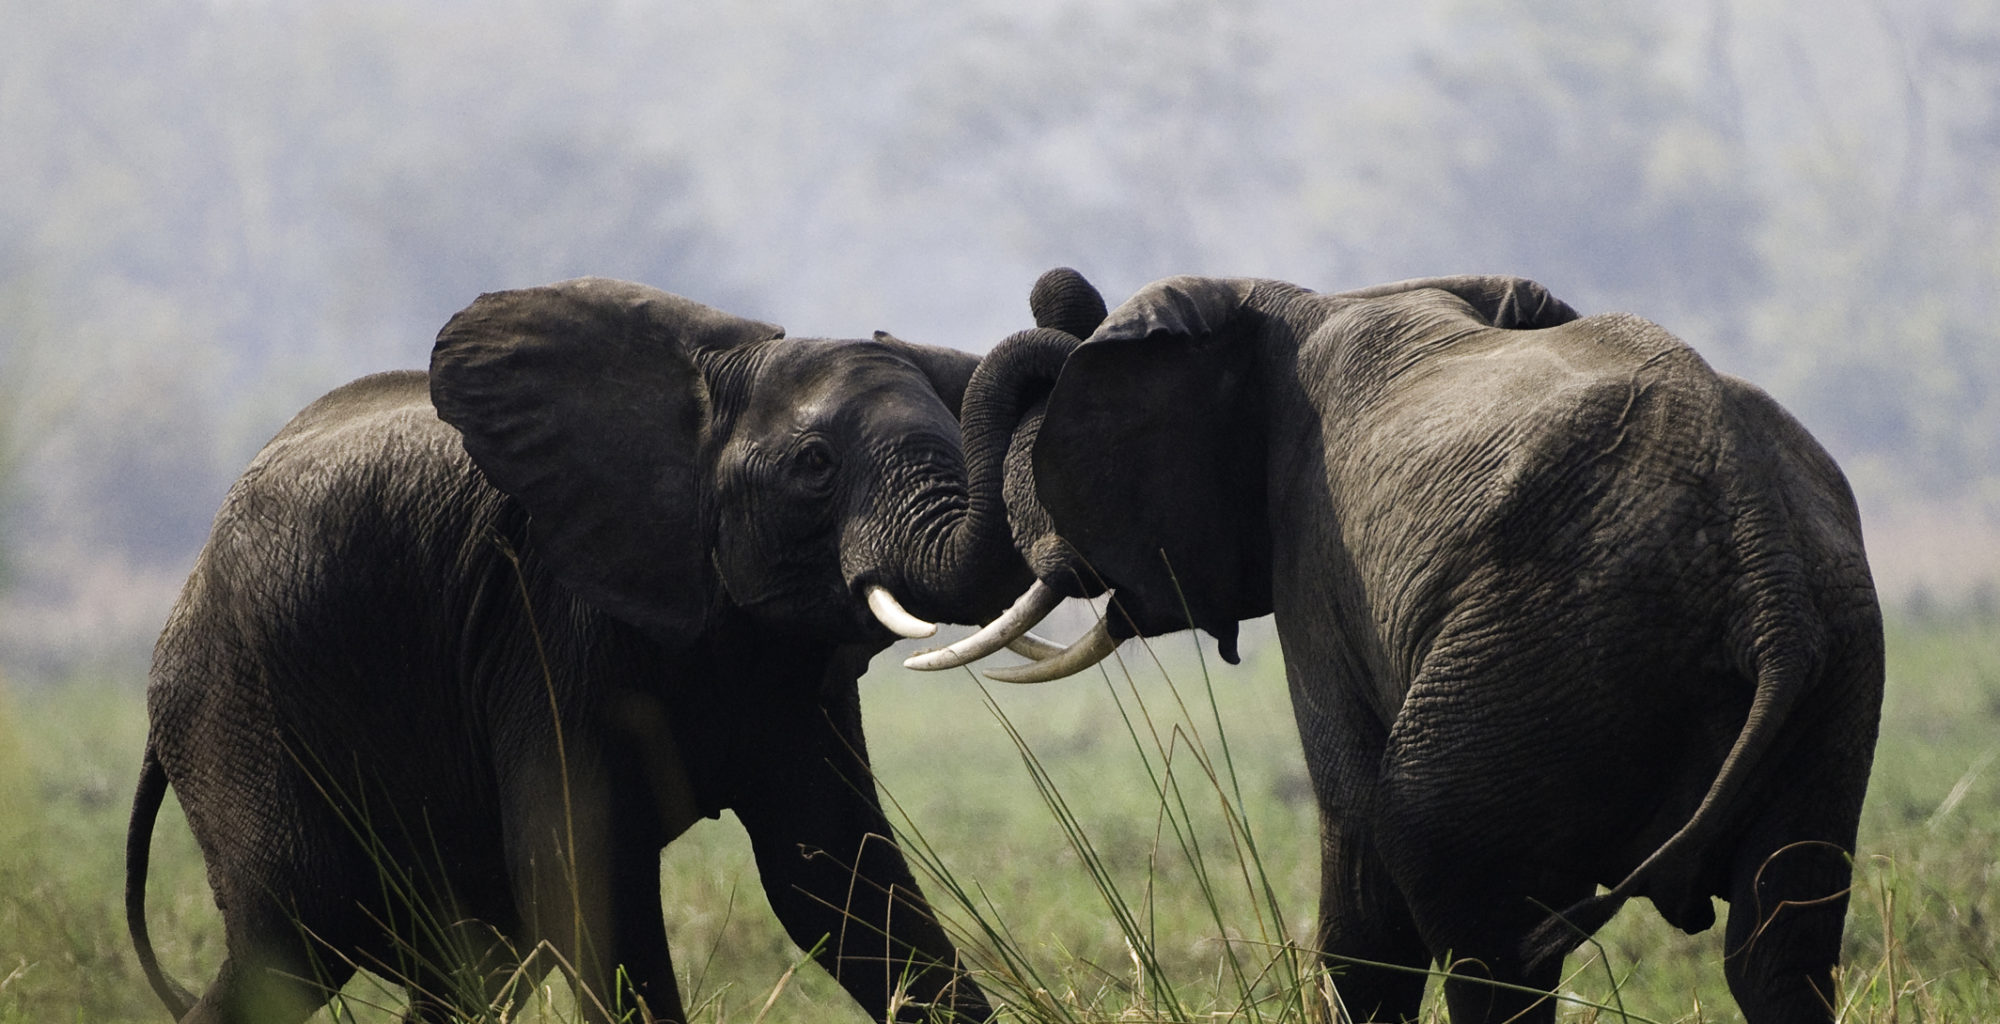 Malawi-Liwonde-National-Park-Elephants